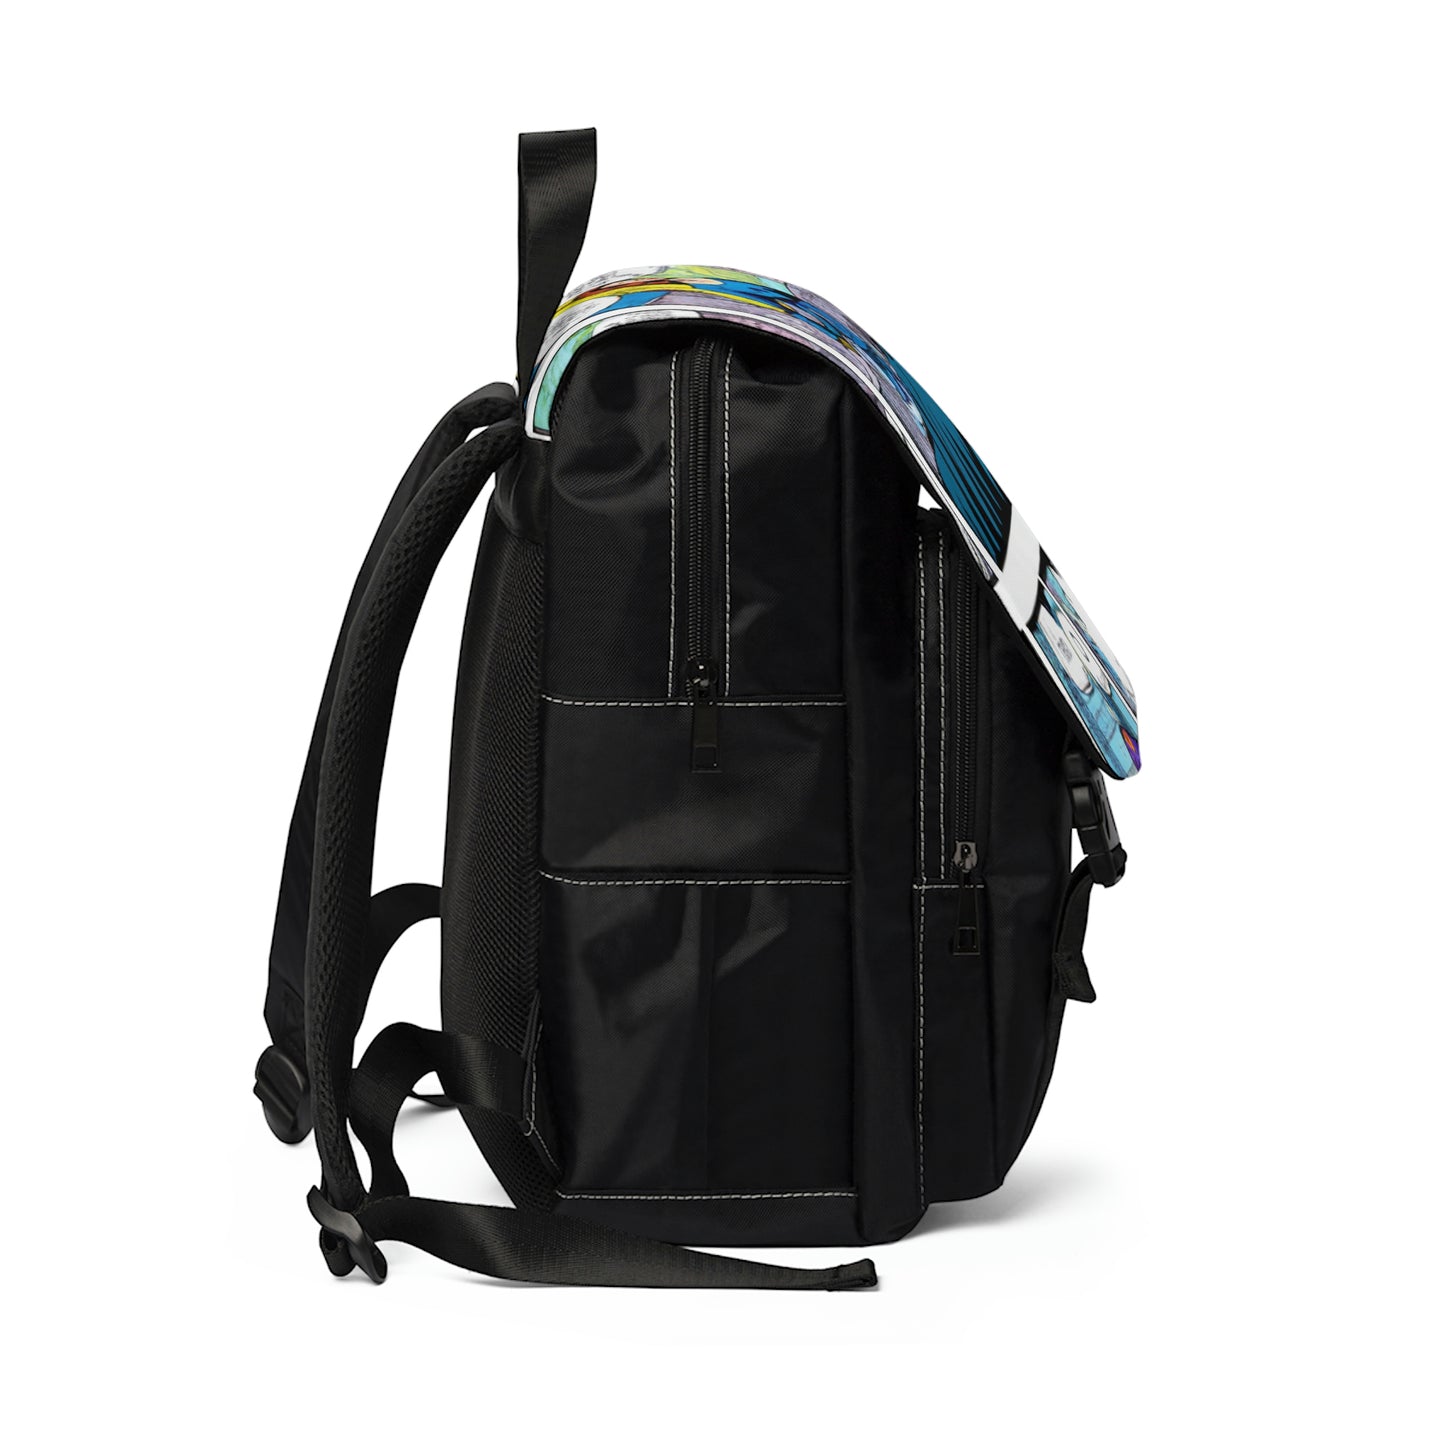 Delroya - Comic Book Shoulder Travel Backpack Bag